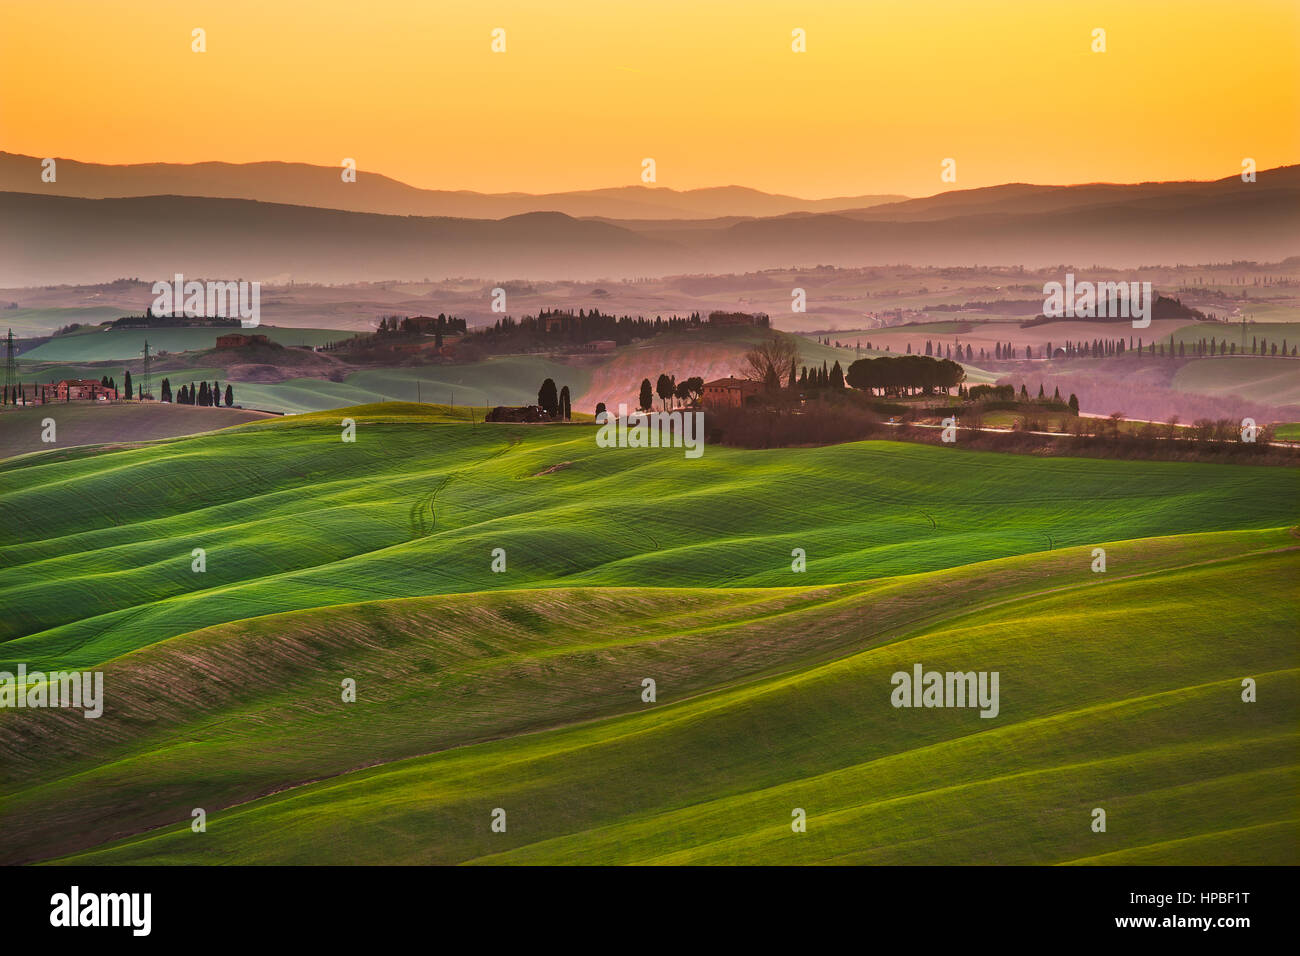 Toskana, sanfte Hügel im Sonnenuntergang. Landschaft der Crete Senesi und Sonnenlicht. Grüne Felder, ein Hof mit Bäumen. Siena, Italien Stockfoto